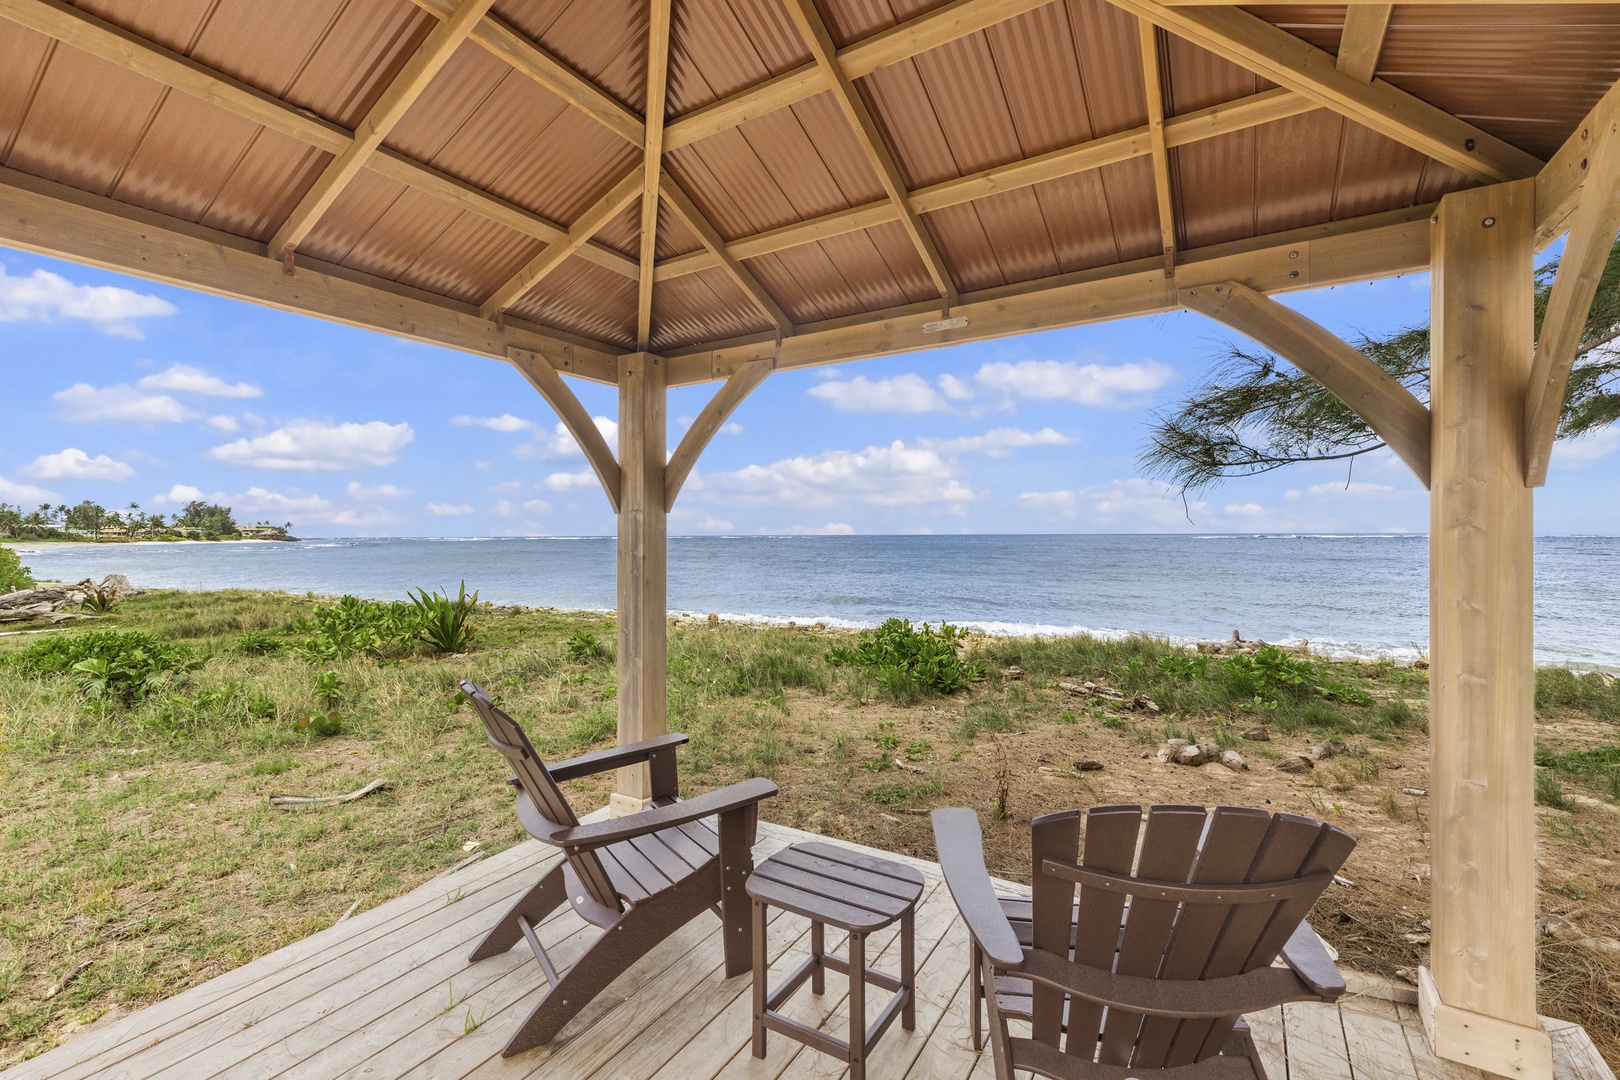 Waialua Vacation Rentals, Kala'iku* - Beachfront gazebo for relaxing near the ocean.